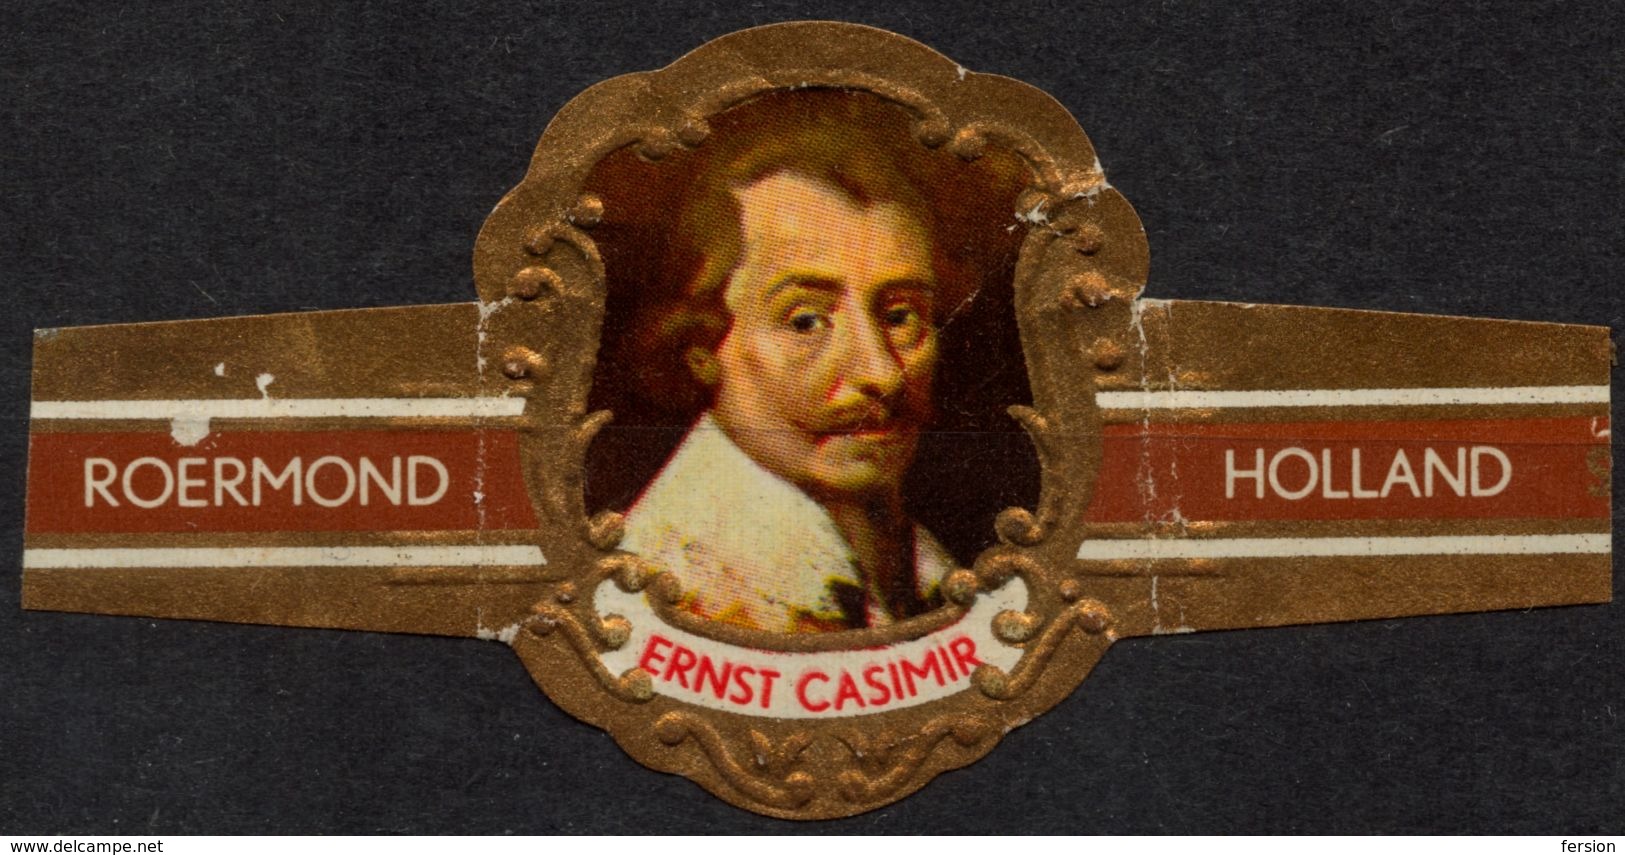 Netherlands / Roermond - Ernst Casimir - CIGAR Label Vignette - Labels